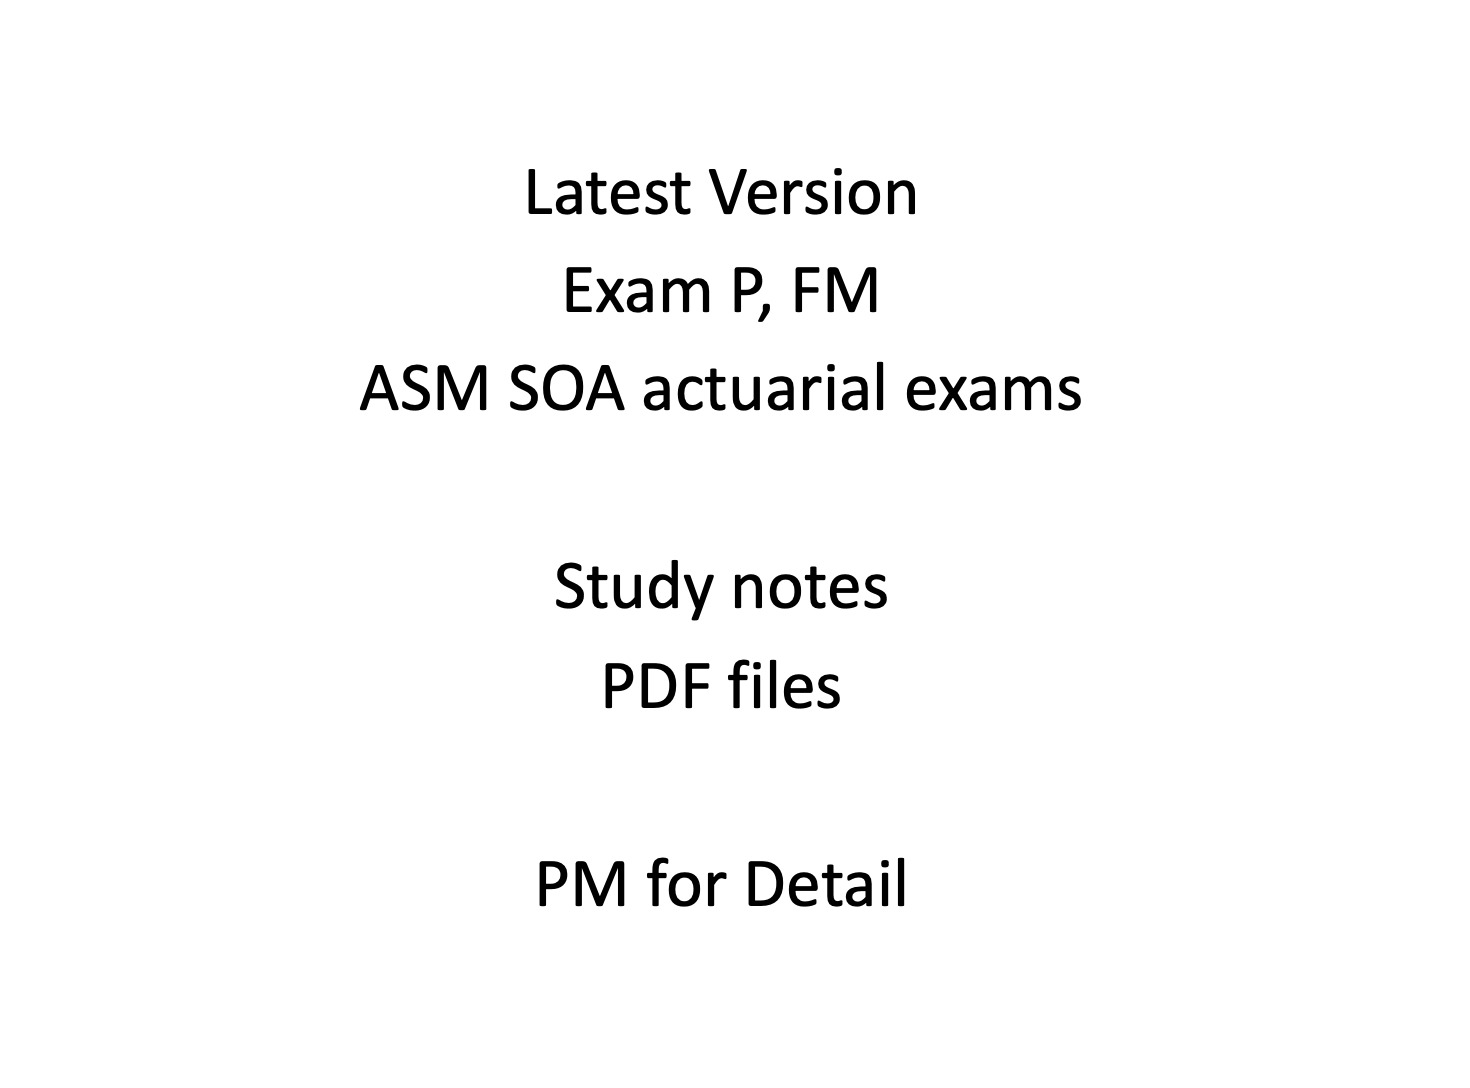 ASM SOA actuarial study manual, Exam P, FM Latest Version